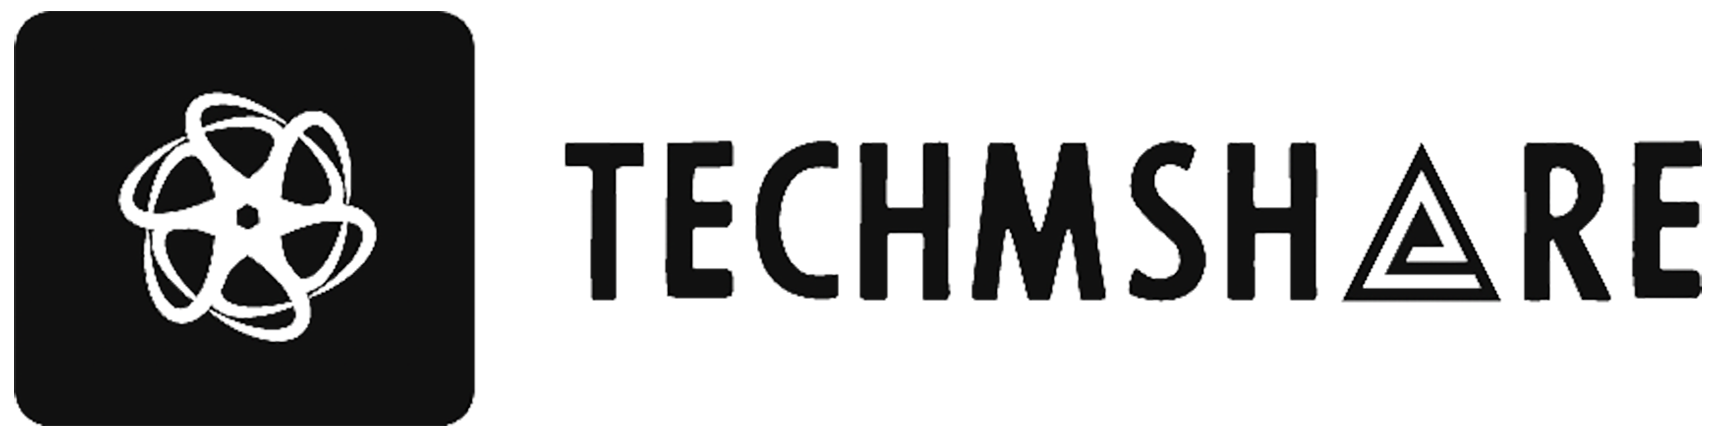 techmshare logo